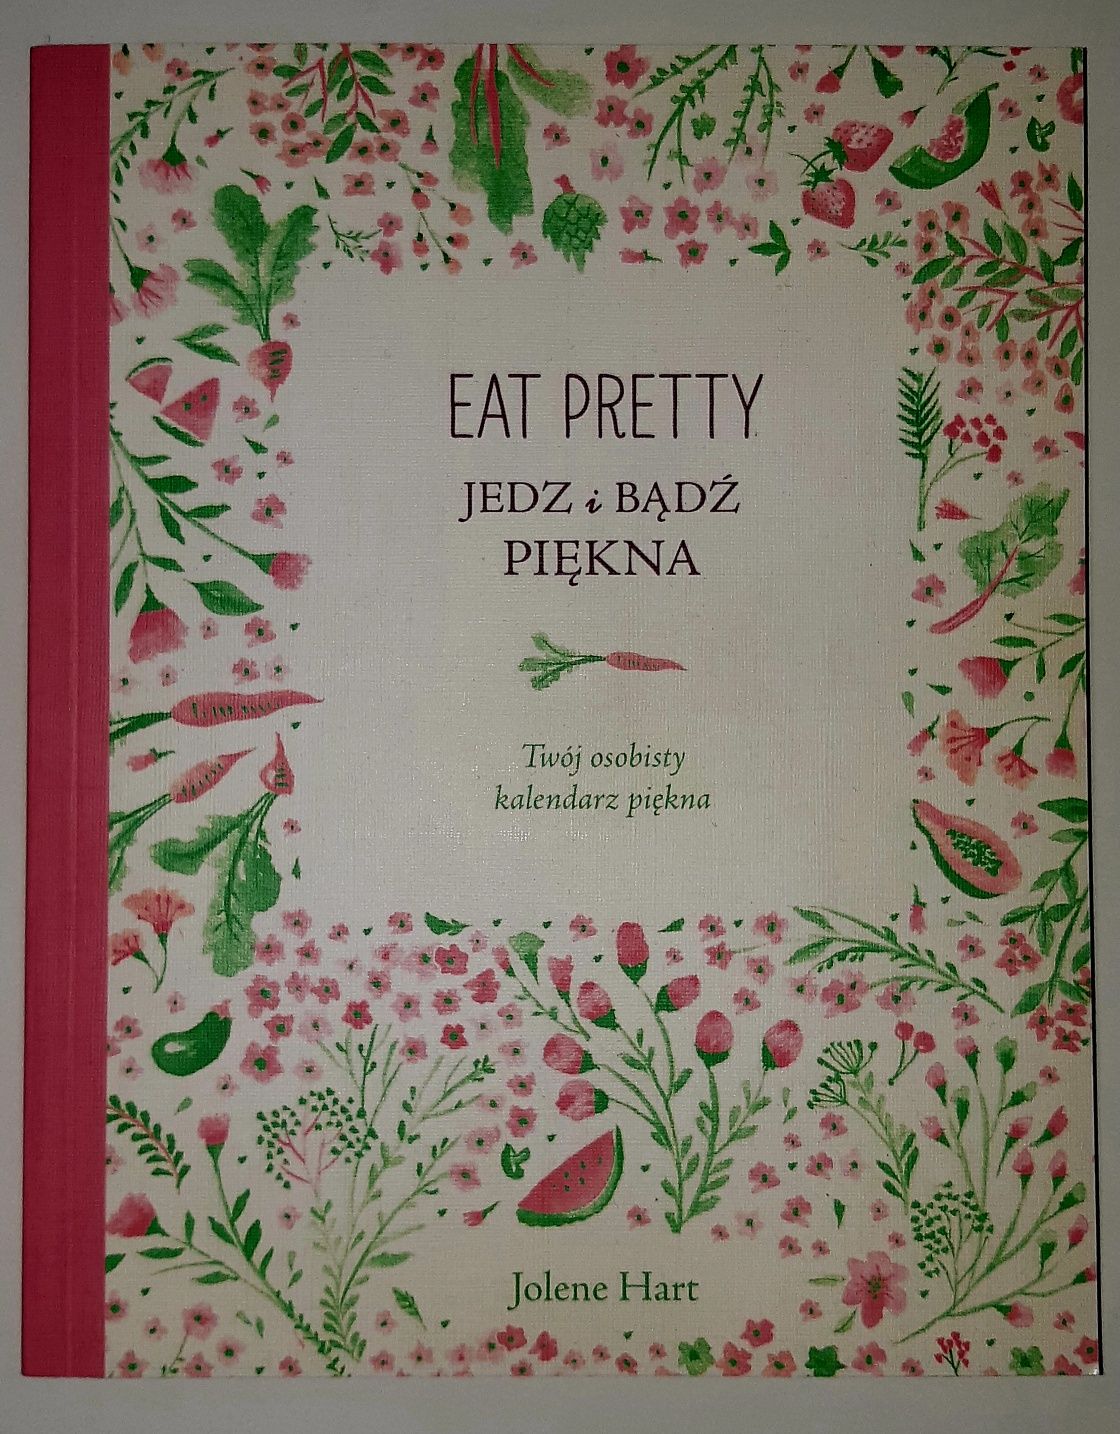 Eat pretty. Jedz i bądź piękna.